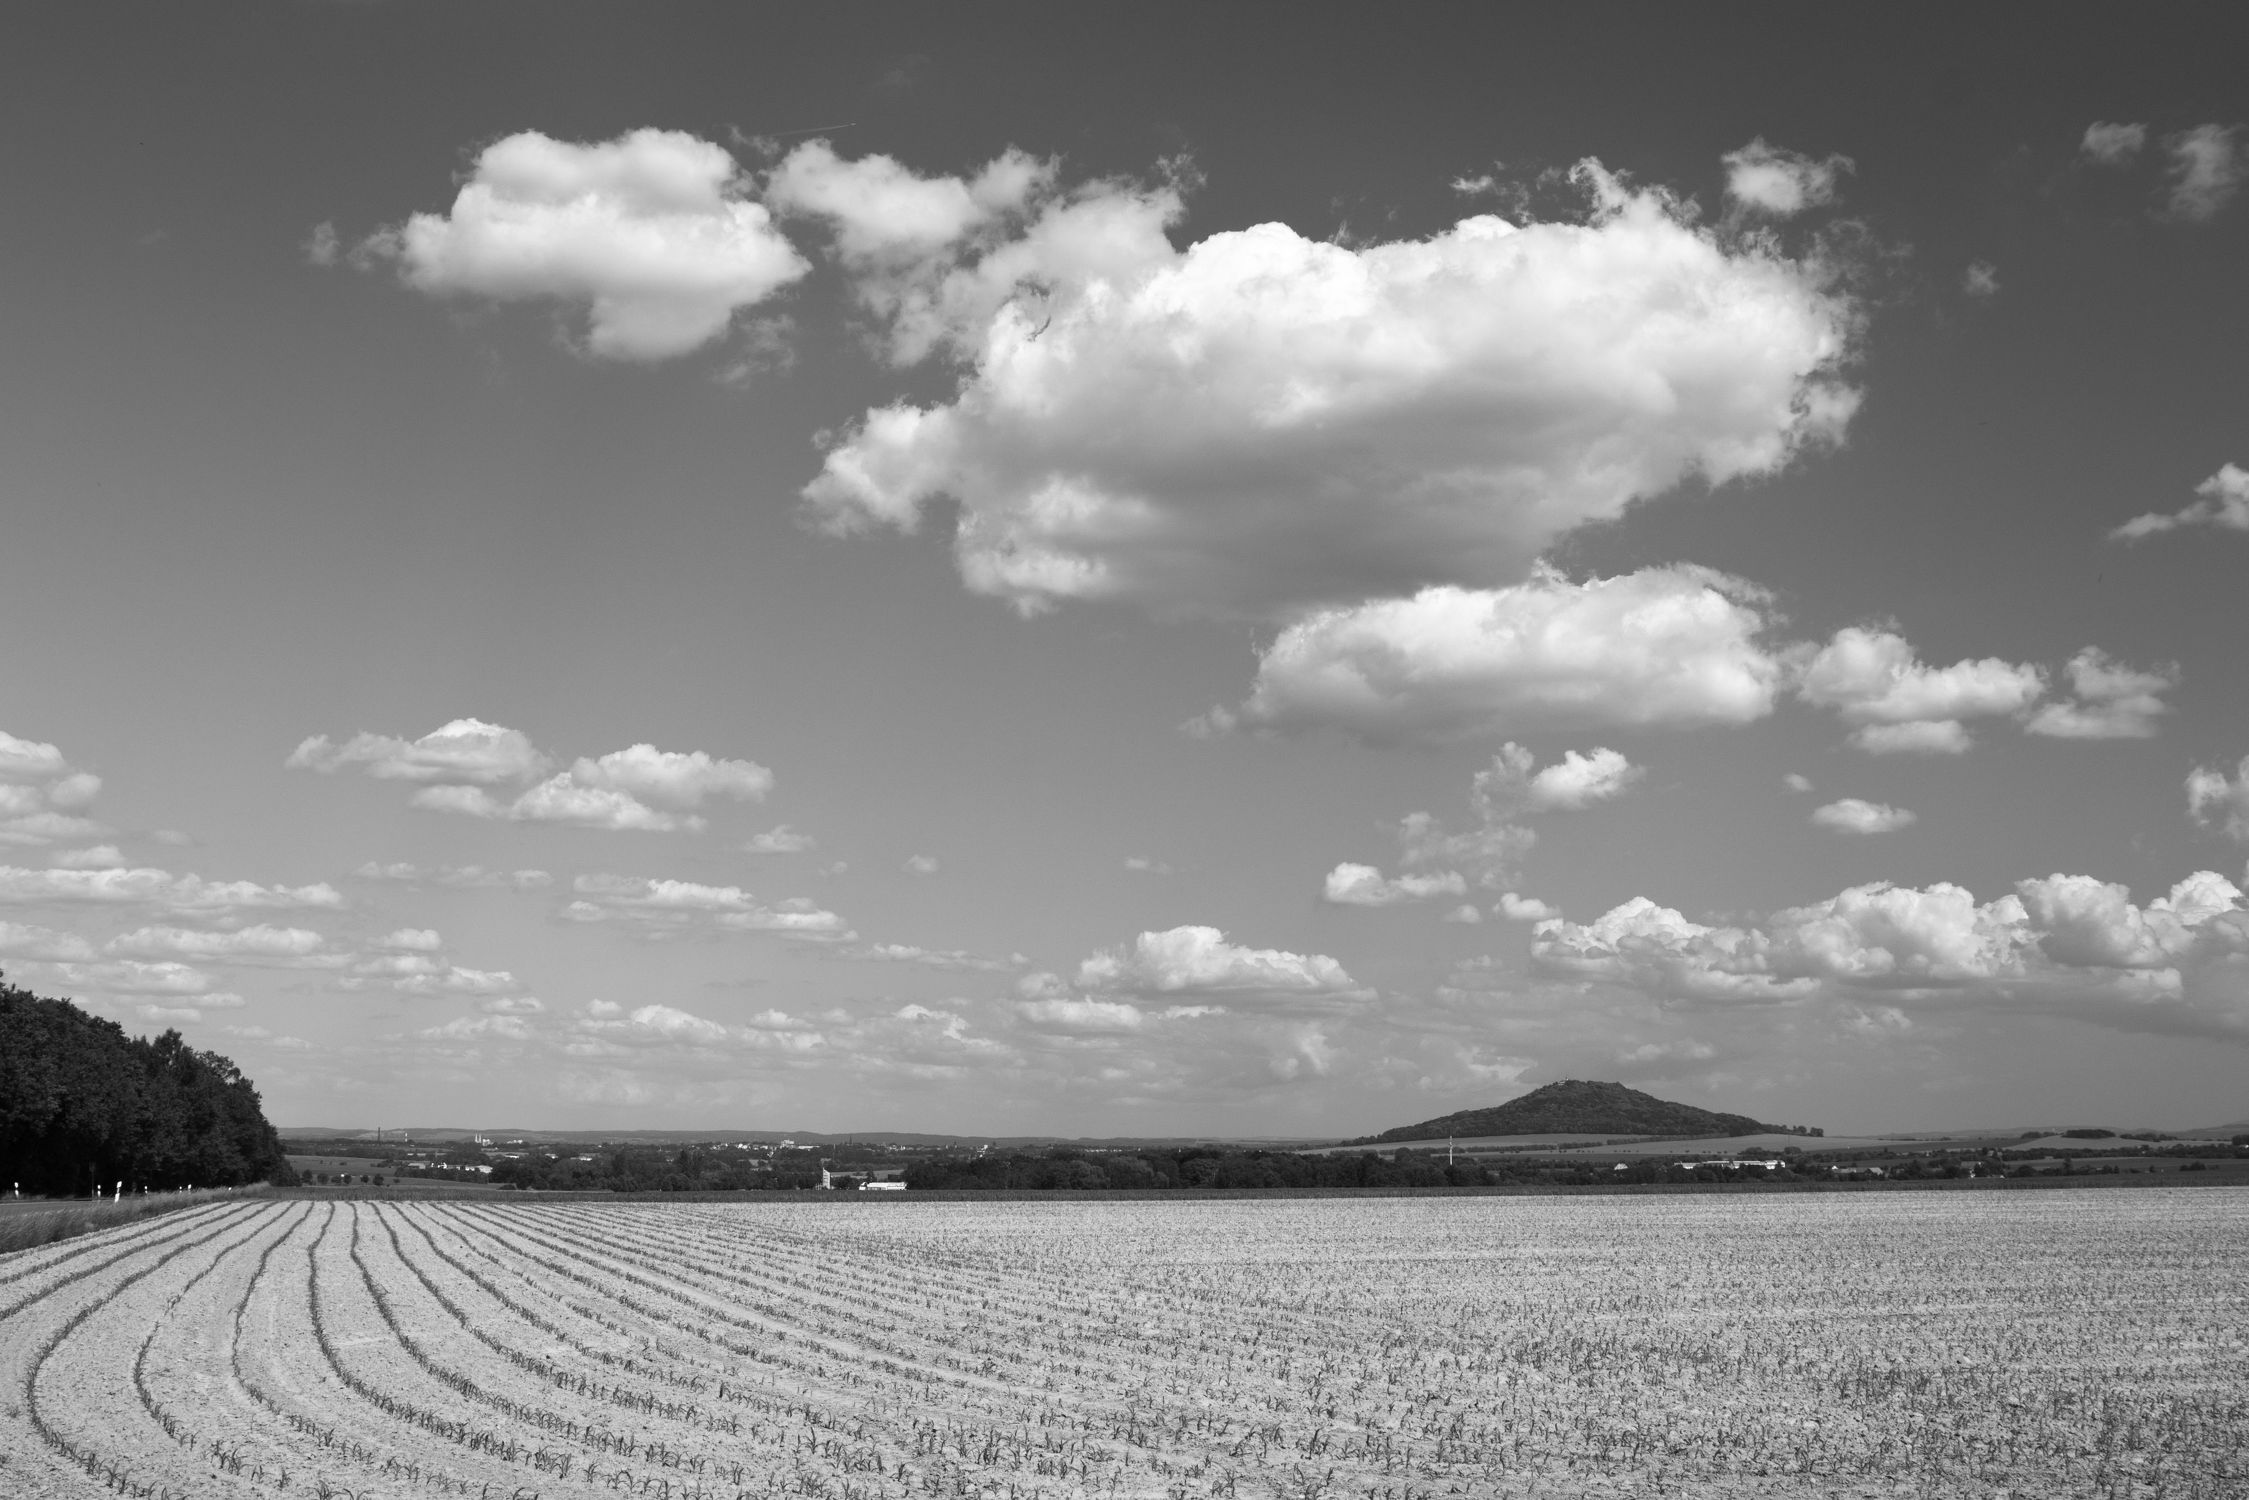 Bild mit Natur, Landschaften, Wolken, Görlitz, Feld, Landeskrone, Felder, berg, schwarz weiß